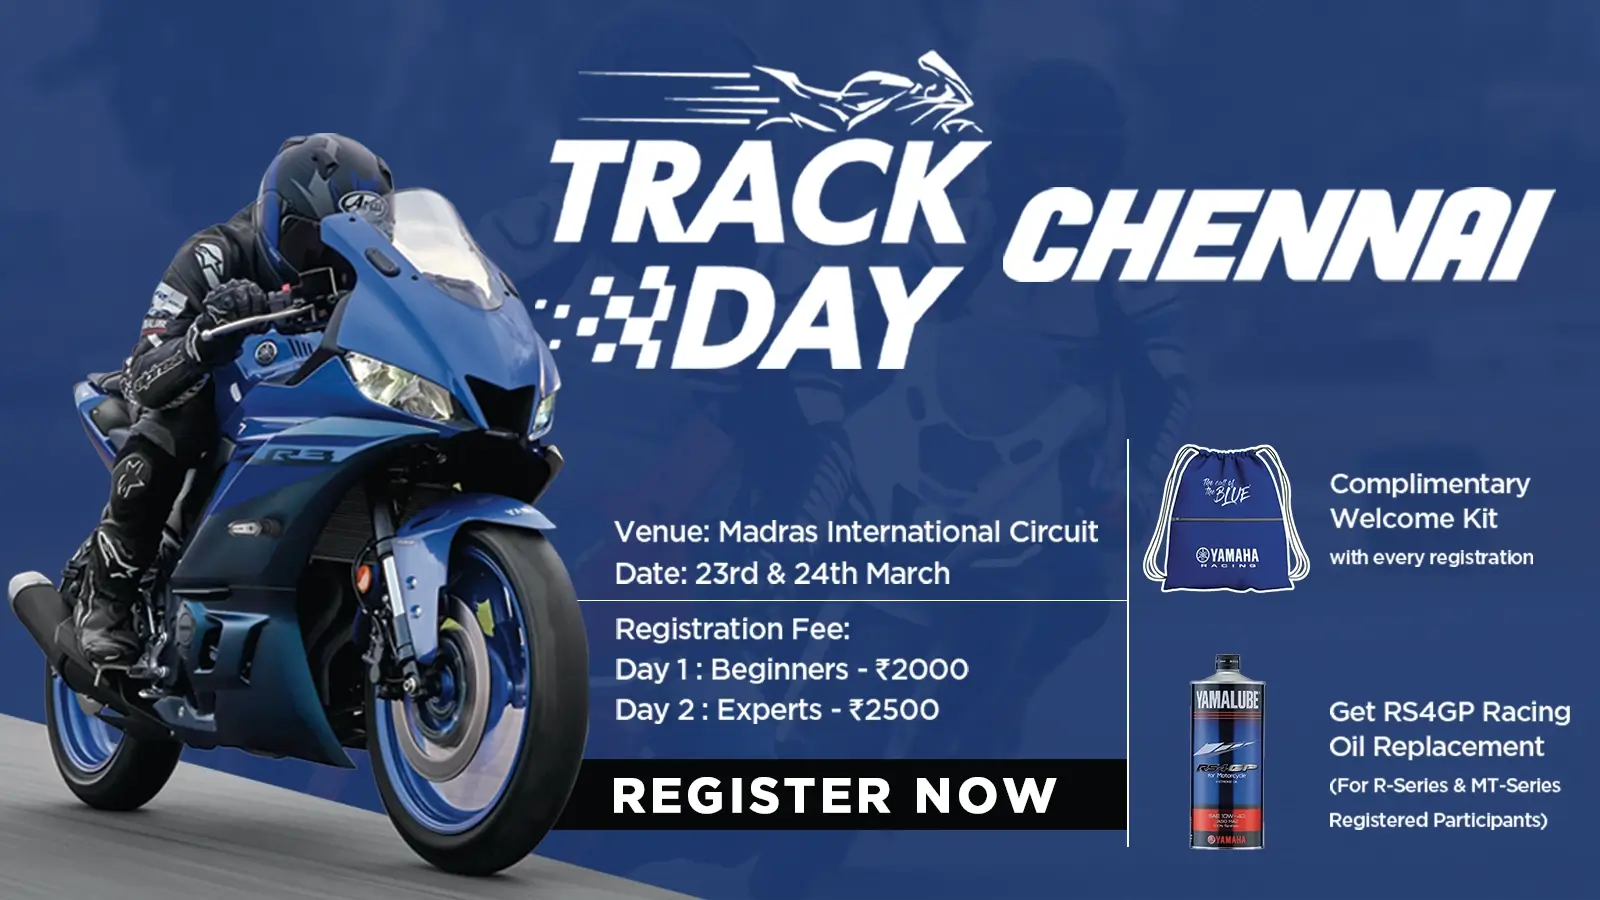 Trackday Chennai